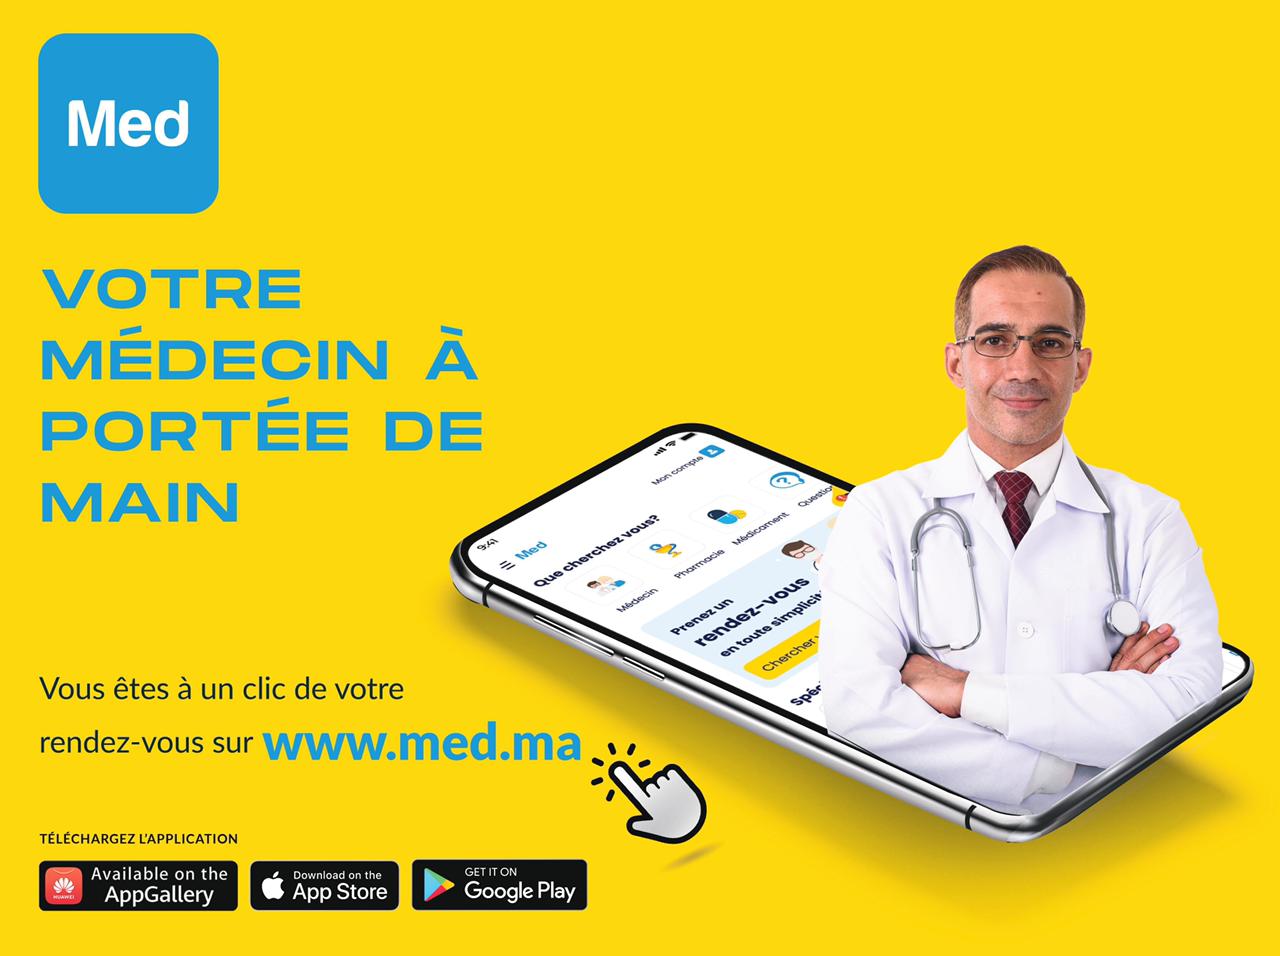 MED, la plateforme médicale de prise de rendez-vous en ligne arrive au Maroc !